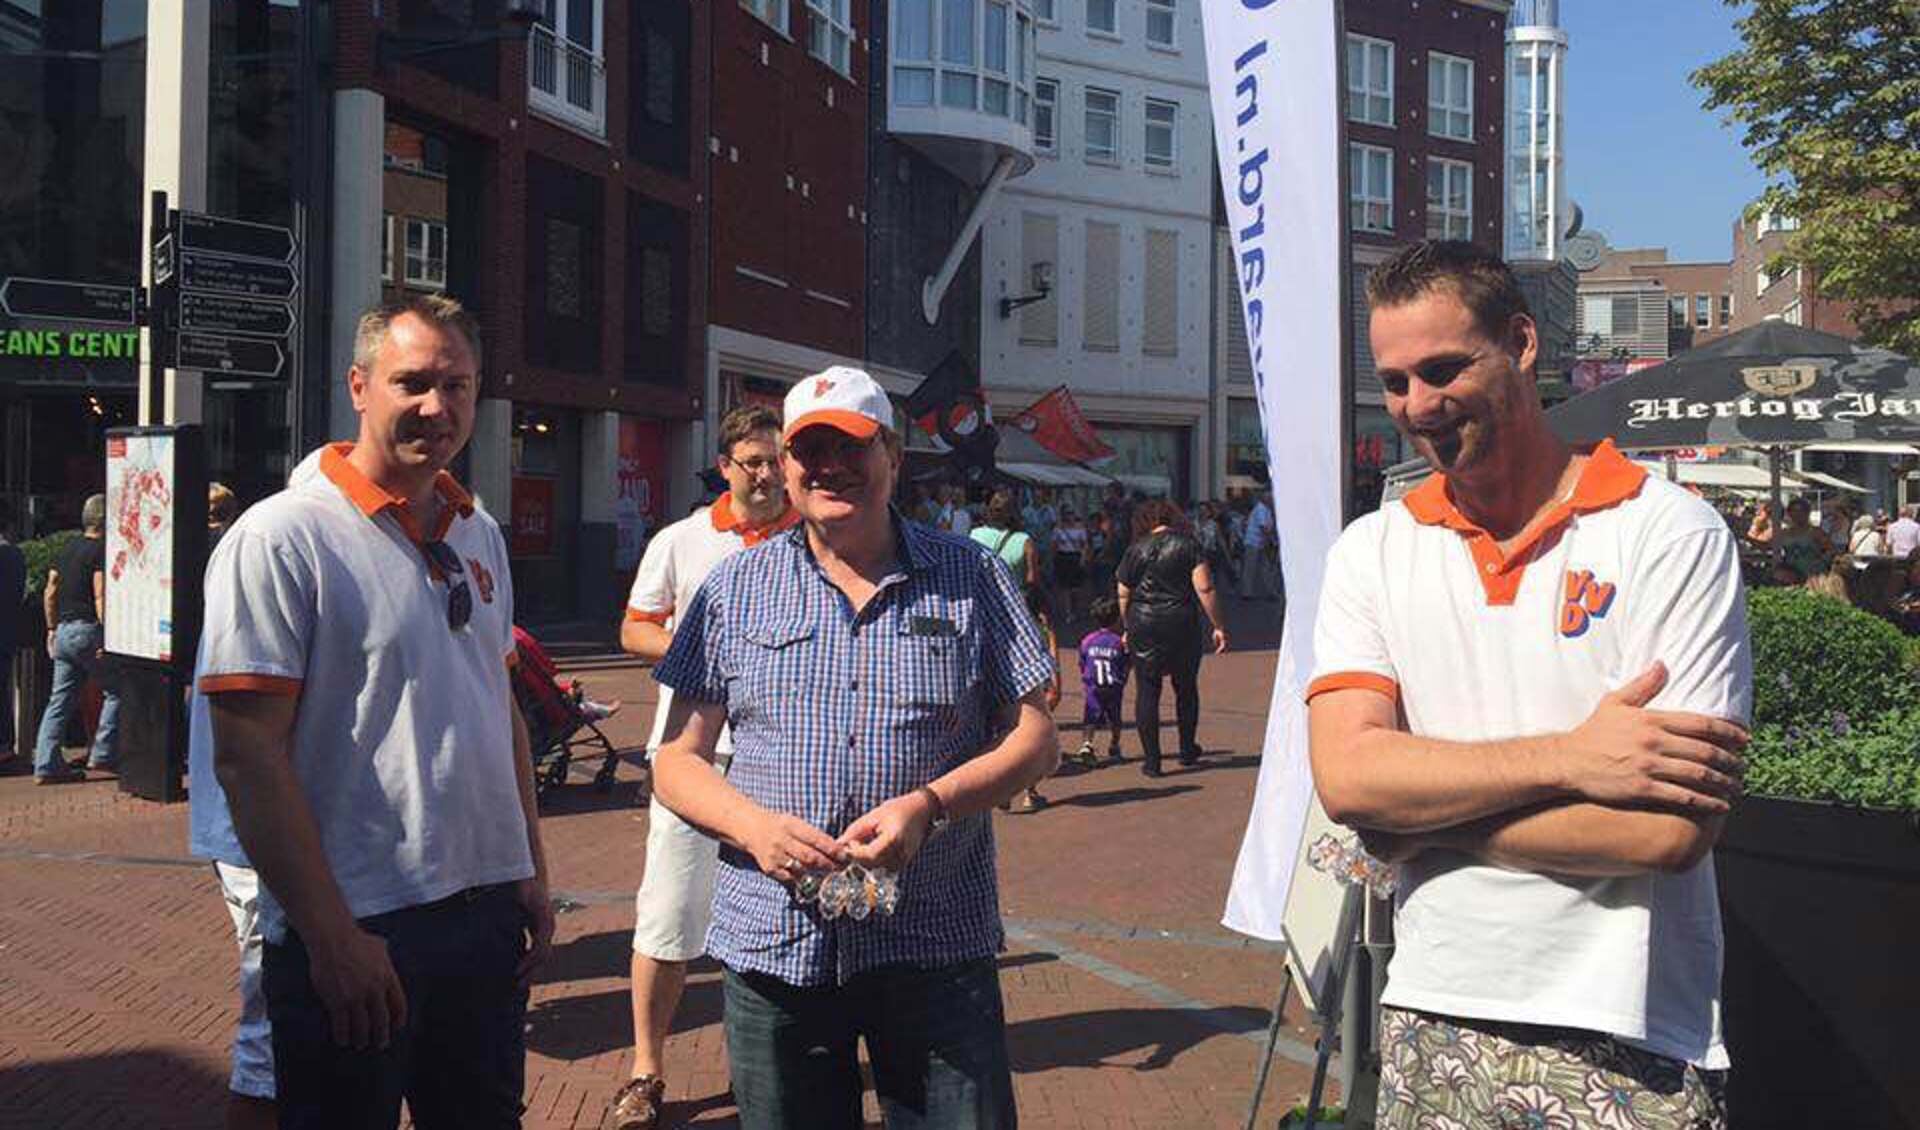 De VVD wil een nog completer festival.